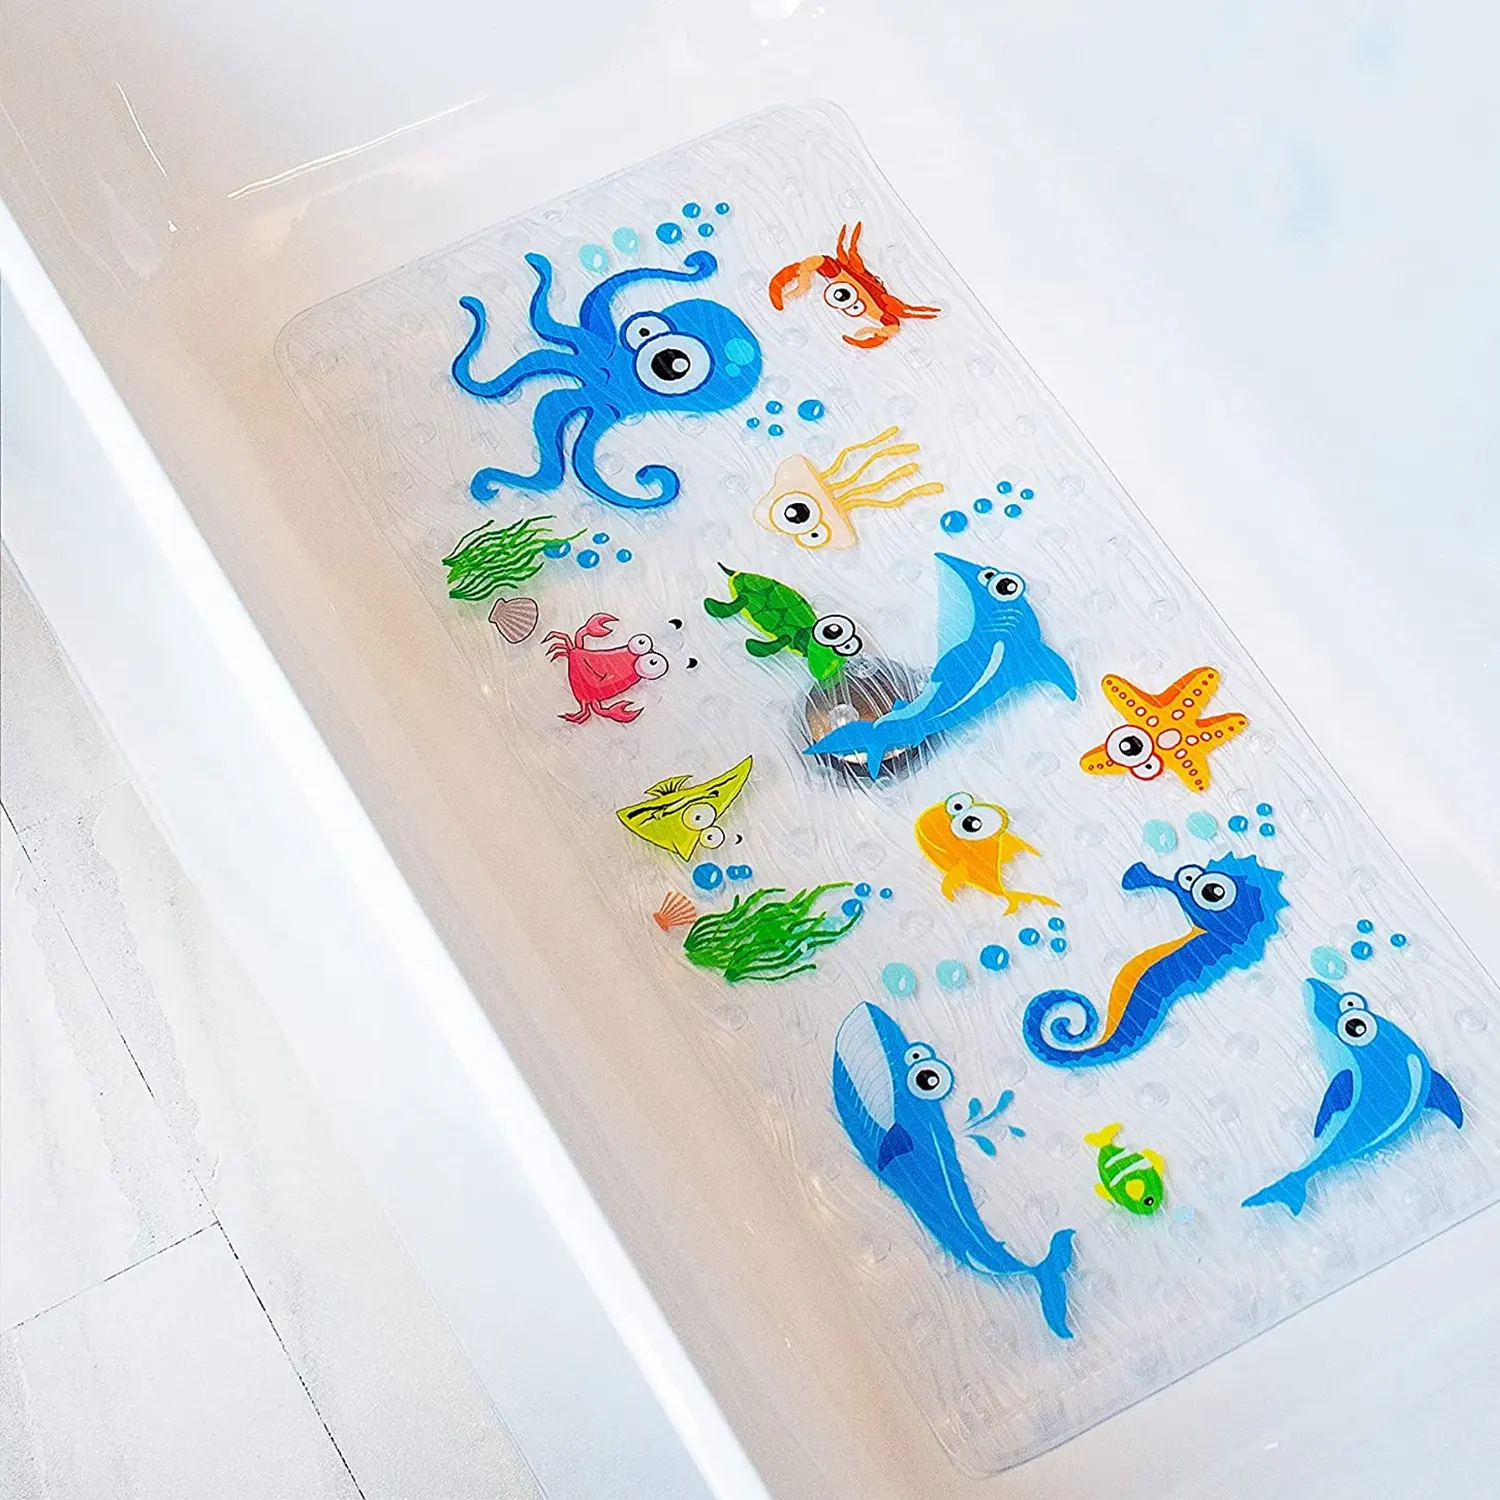 Hot Badematte Custom Kinder rutsch feste Badewanne Bade matte Anti-Rutsch-Bad Saug-Dusch matte mit Haken für Kinder Kinder Baby